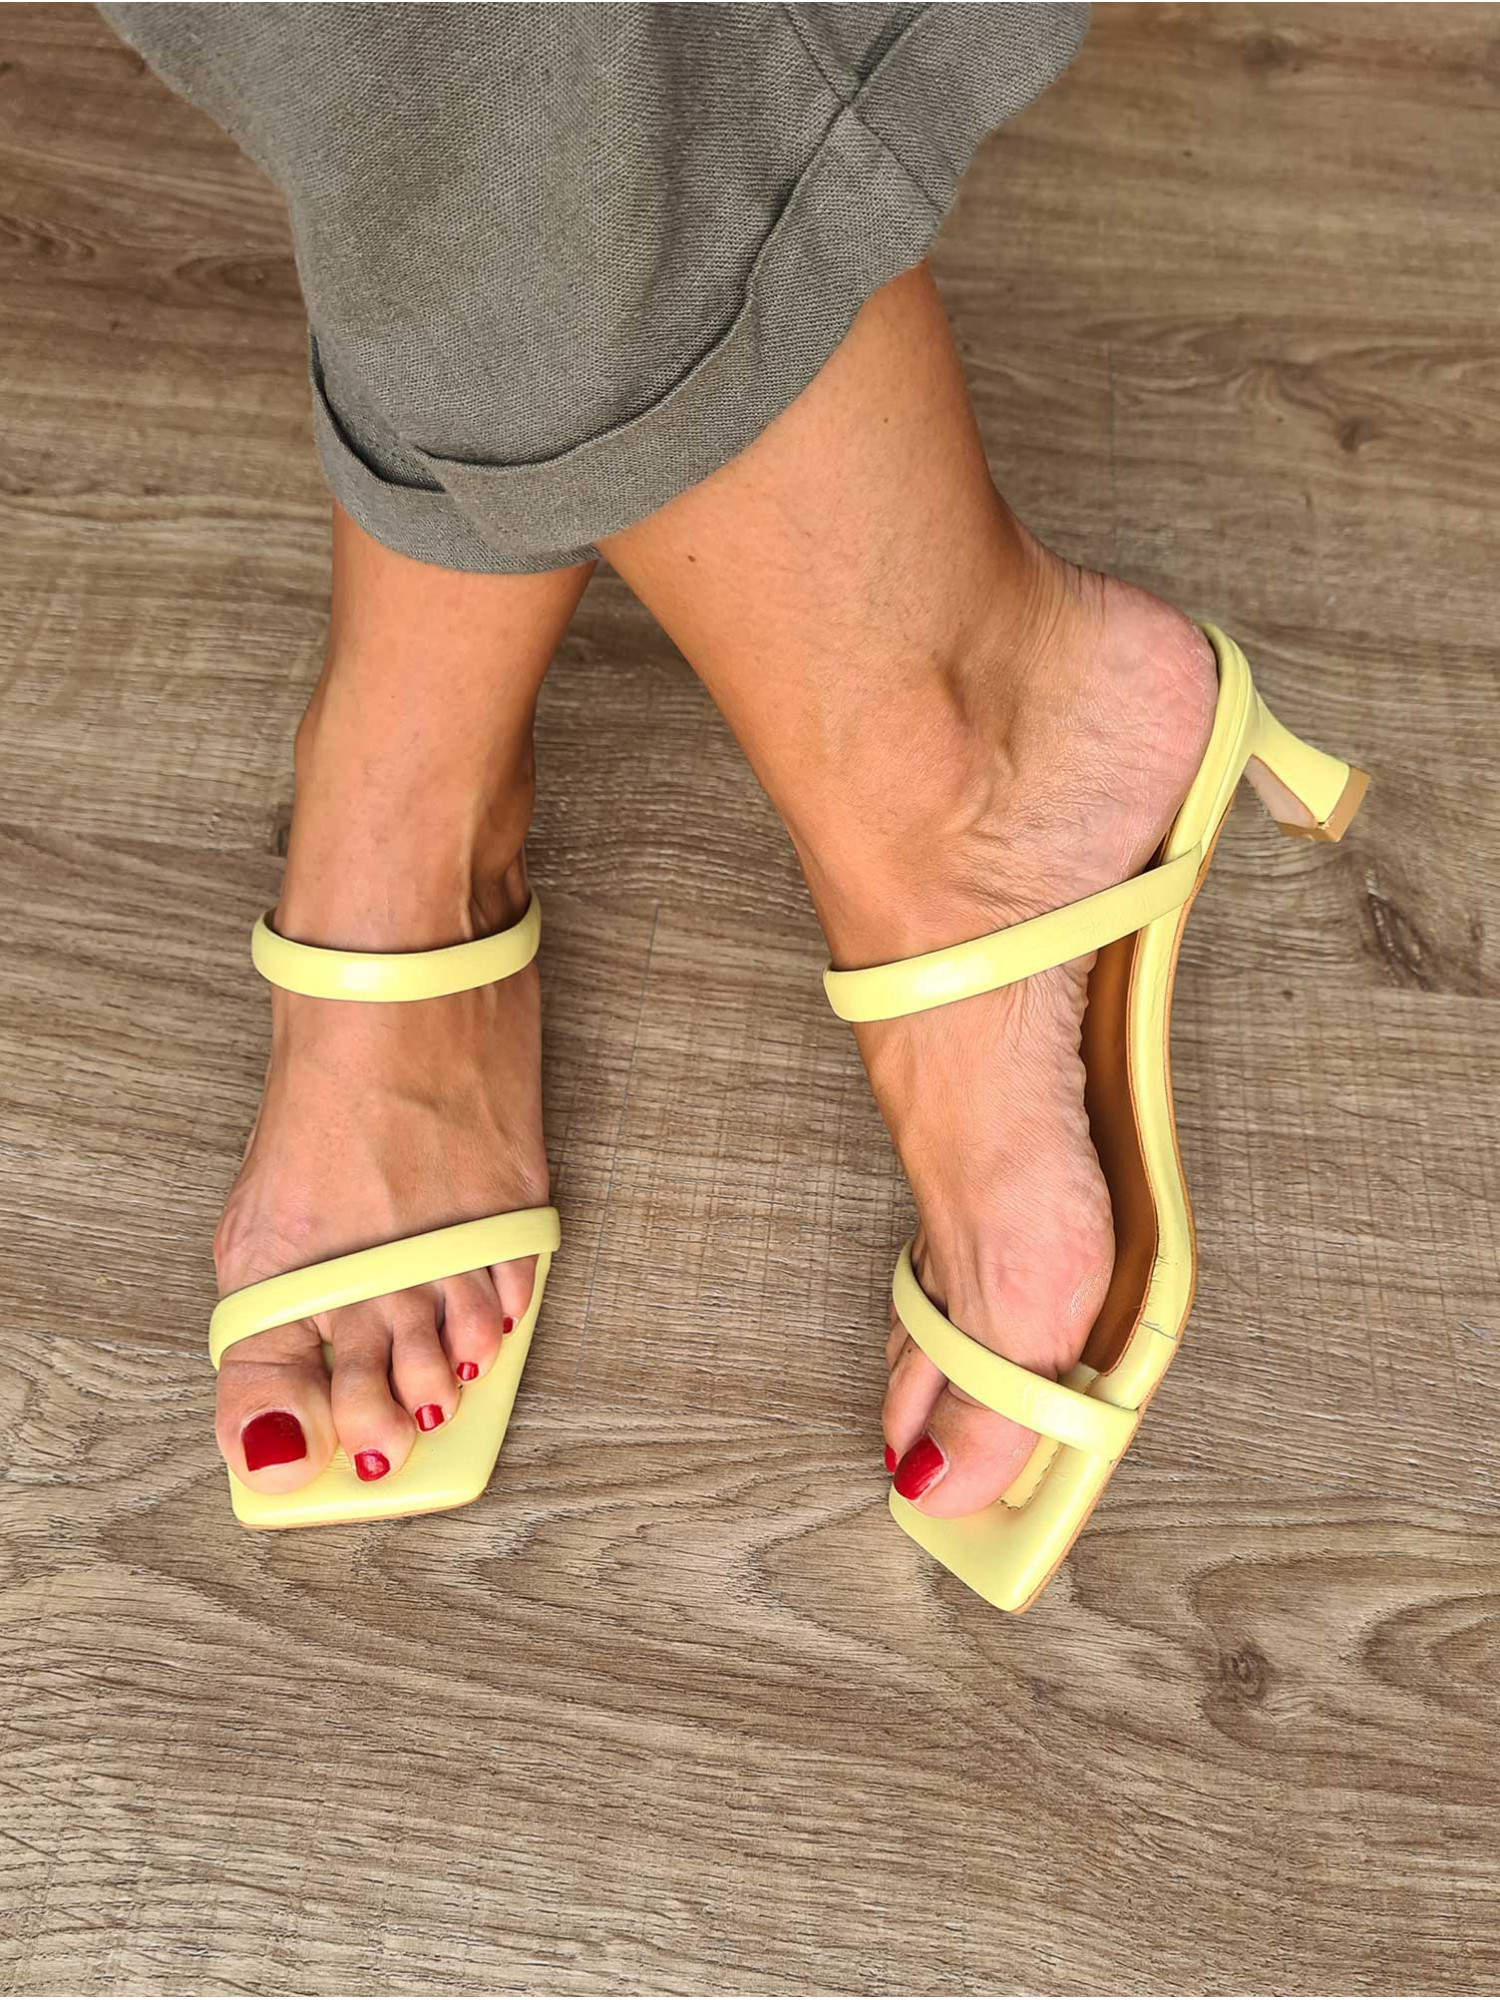 Sandalias de piel amarillas destalonadas para mujer con tiras, suela de cuero y pequeño tacón.